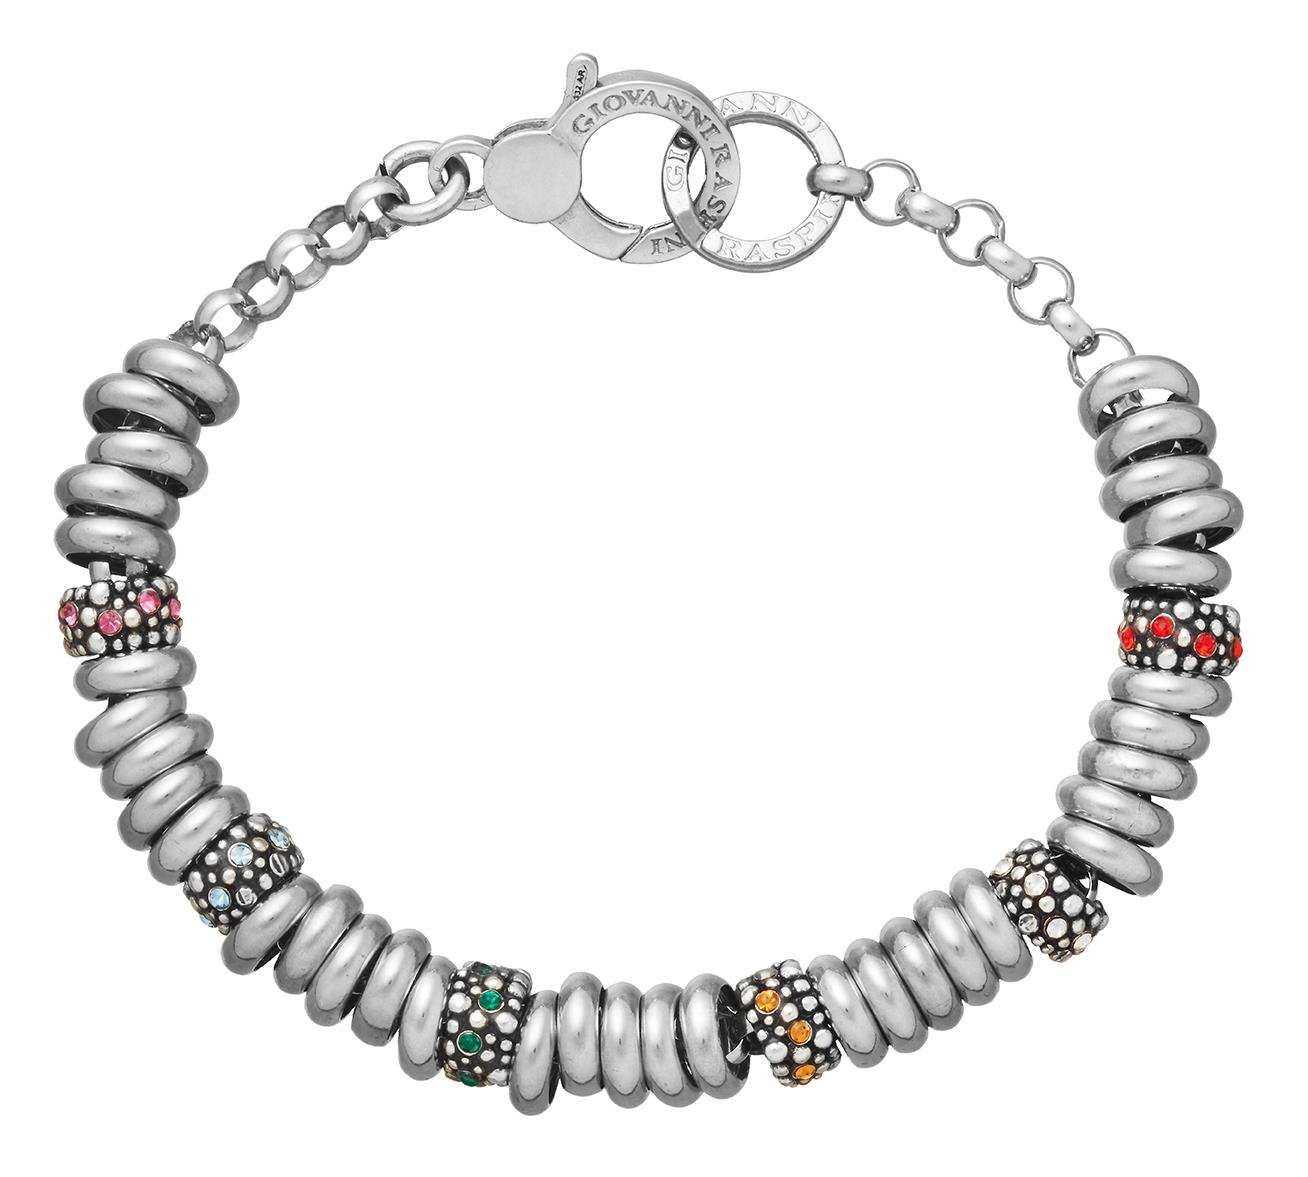 Giovanni Raspini - Bracciale Beads Crystal Color Ref. 11983 - GIOVANNI RASPINI